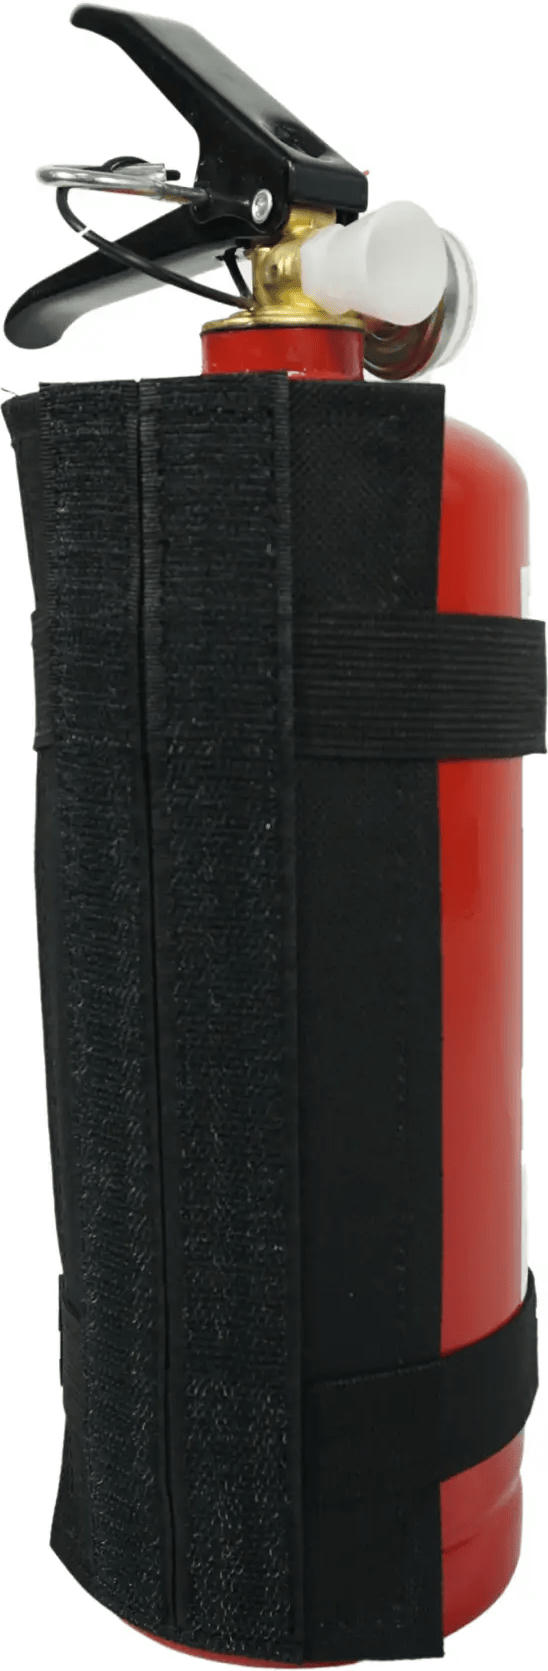 Огнетушитель Poputchik порошковый 1 кг с текстильным креплением (04-028-IS) фото 2